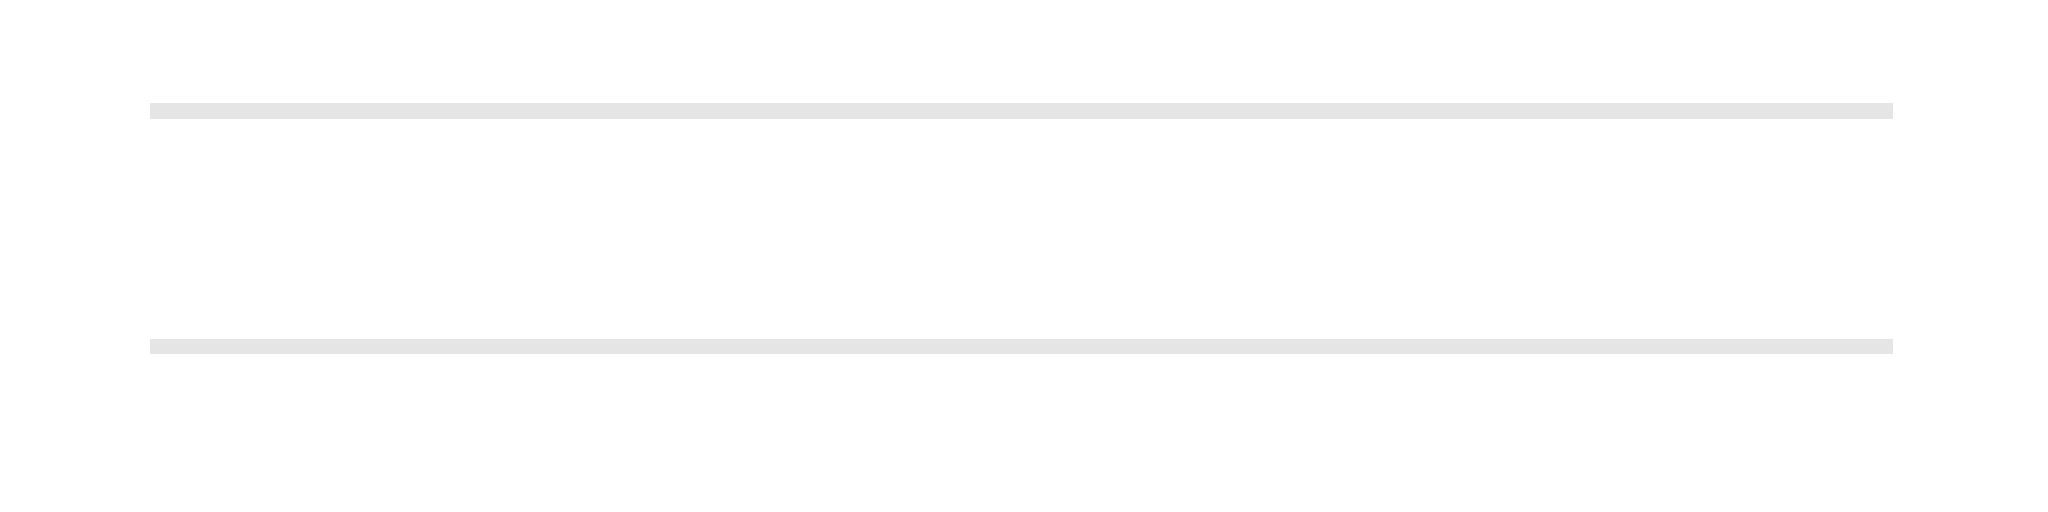 Criminal Justice Alternative